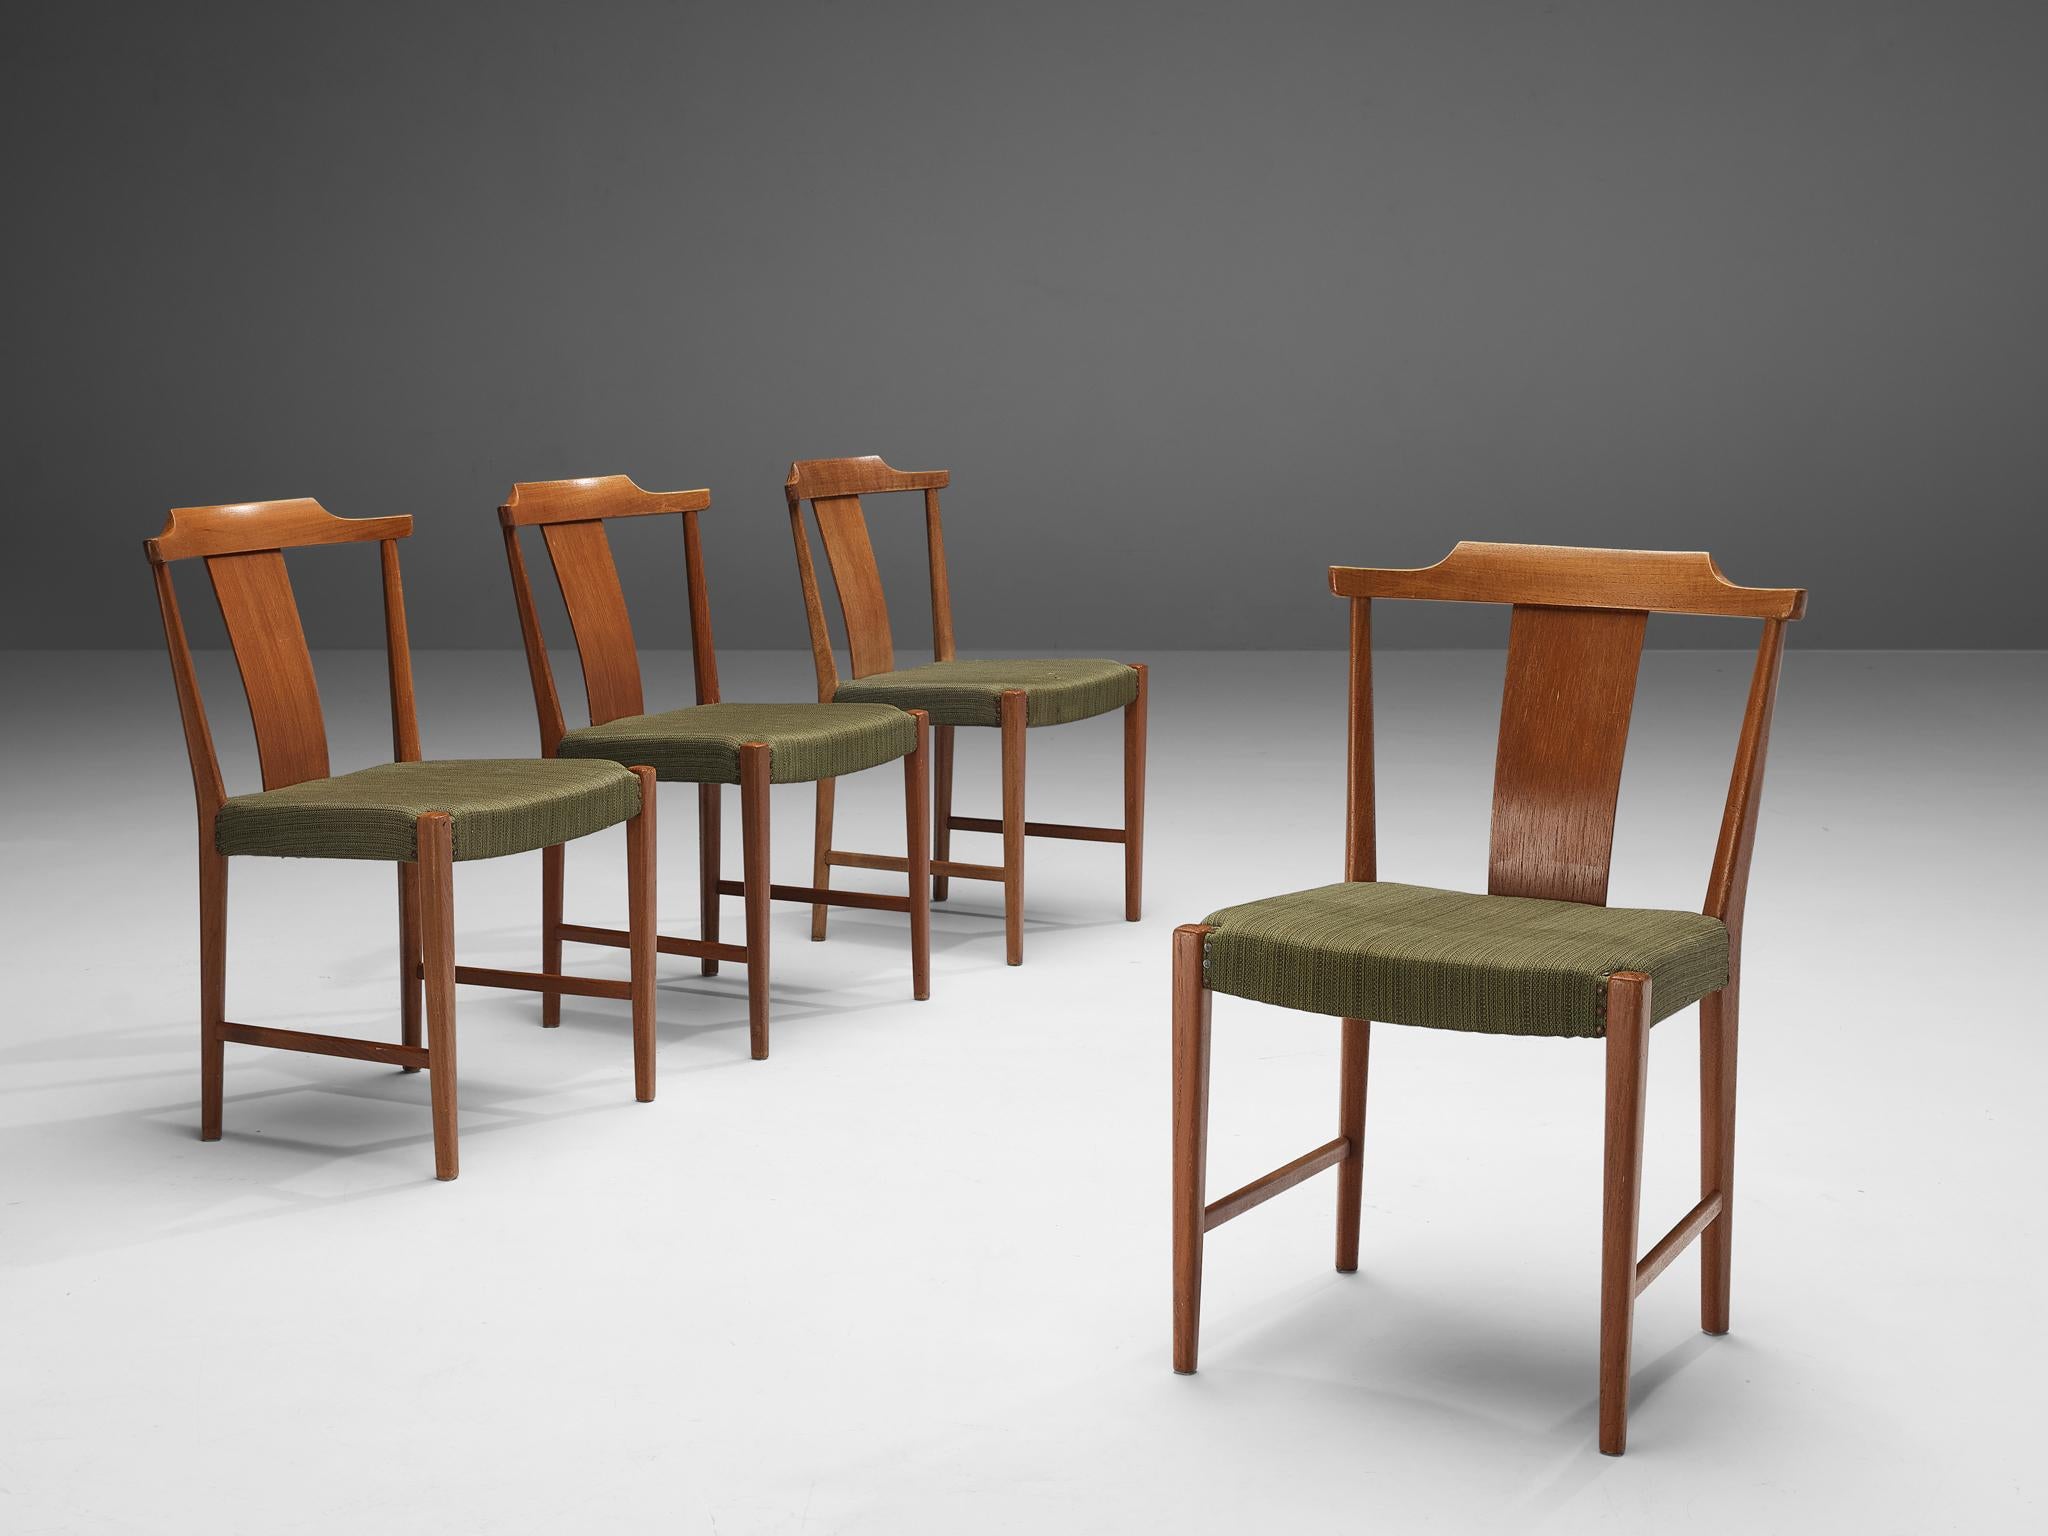 Bertil Fridhagen for Bodafors, dining chairs, teak, fabric, Denmark, 1960s.

Lovely set of four dining chairs designed by Bertil Fridhagen for the Danish manufacturer Bodafors in the 1960s. Dining chairs with strongly formed frames in teak. This